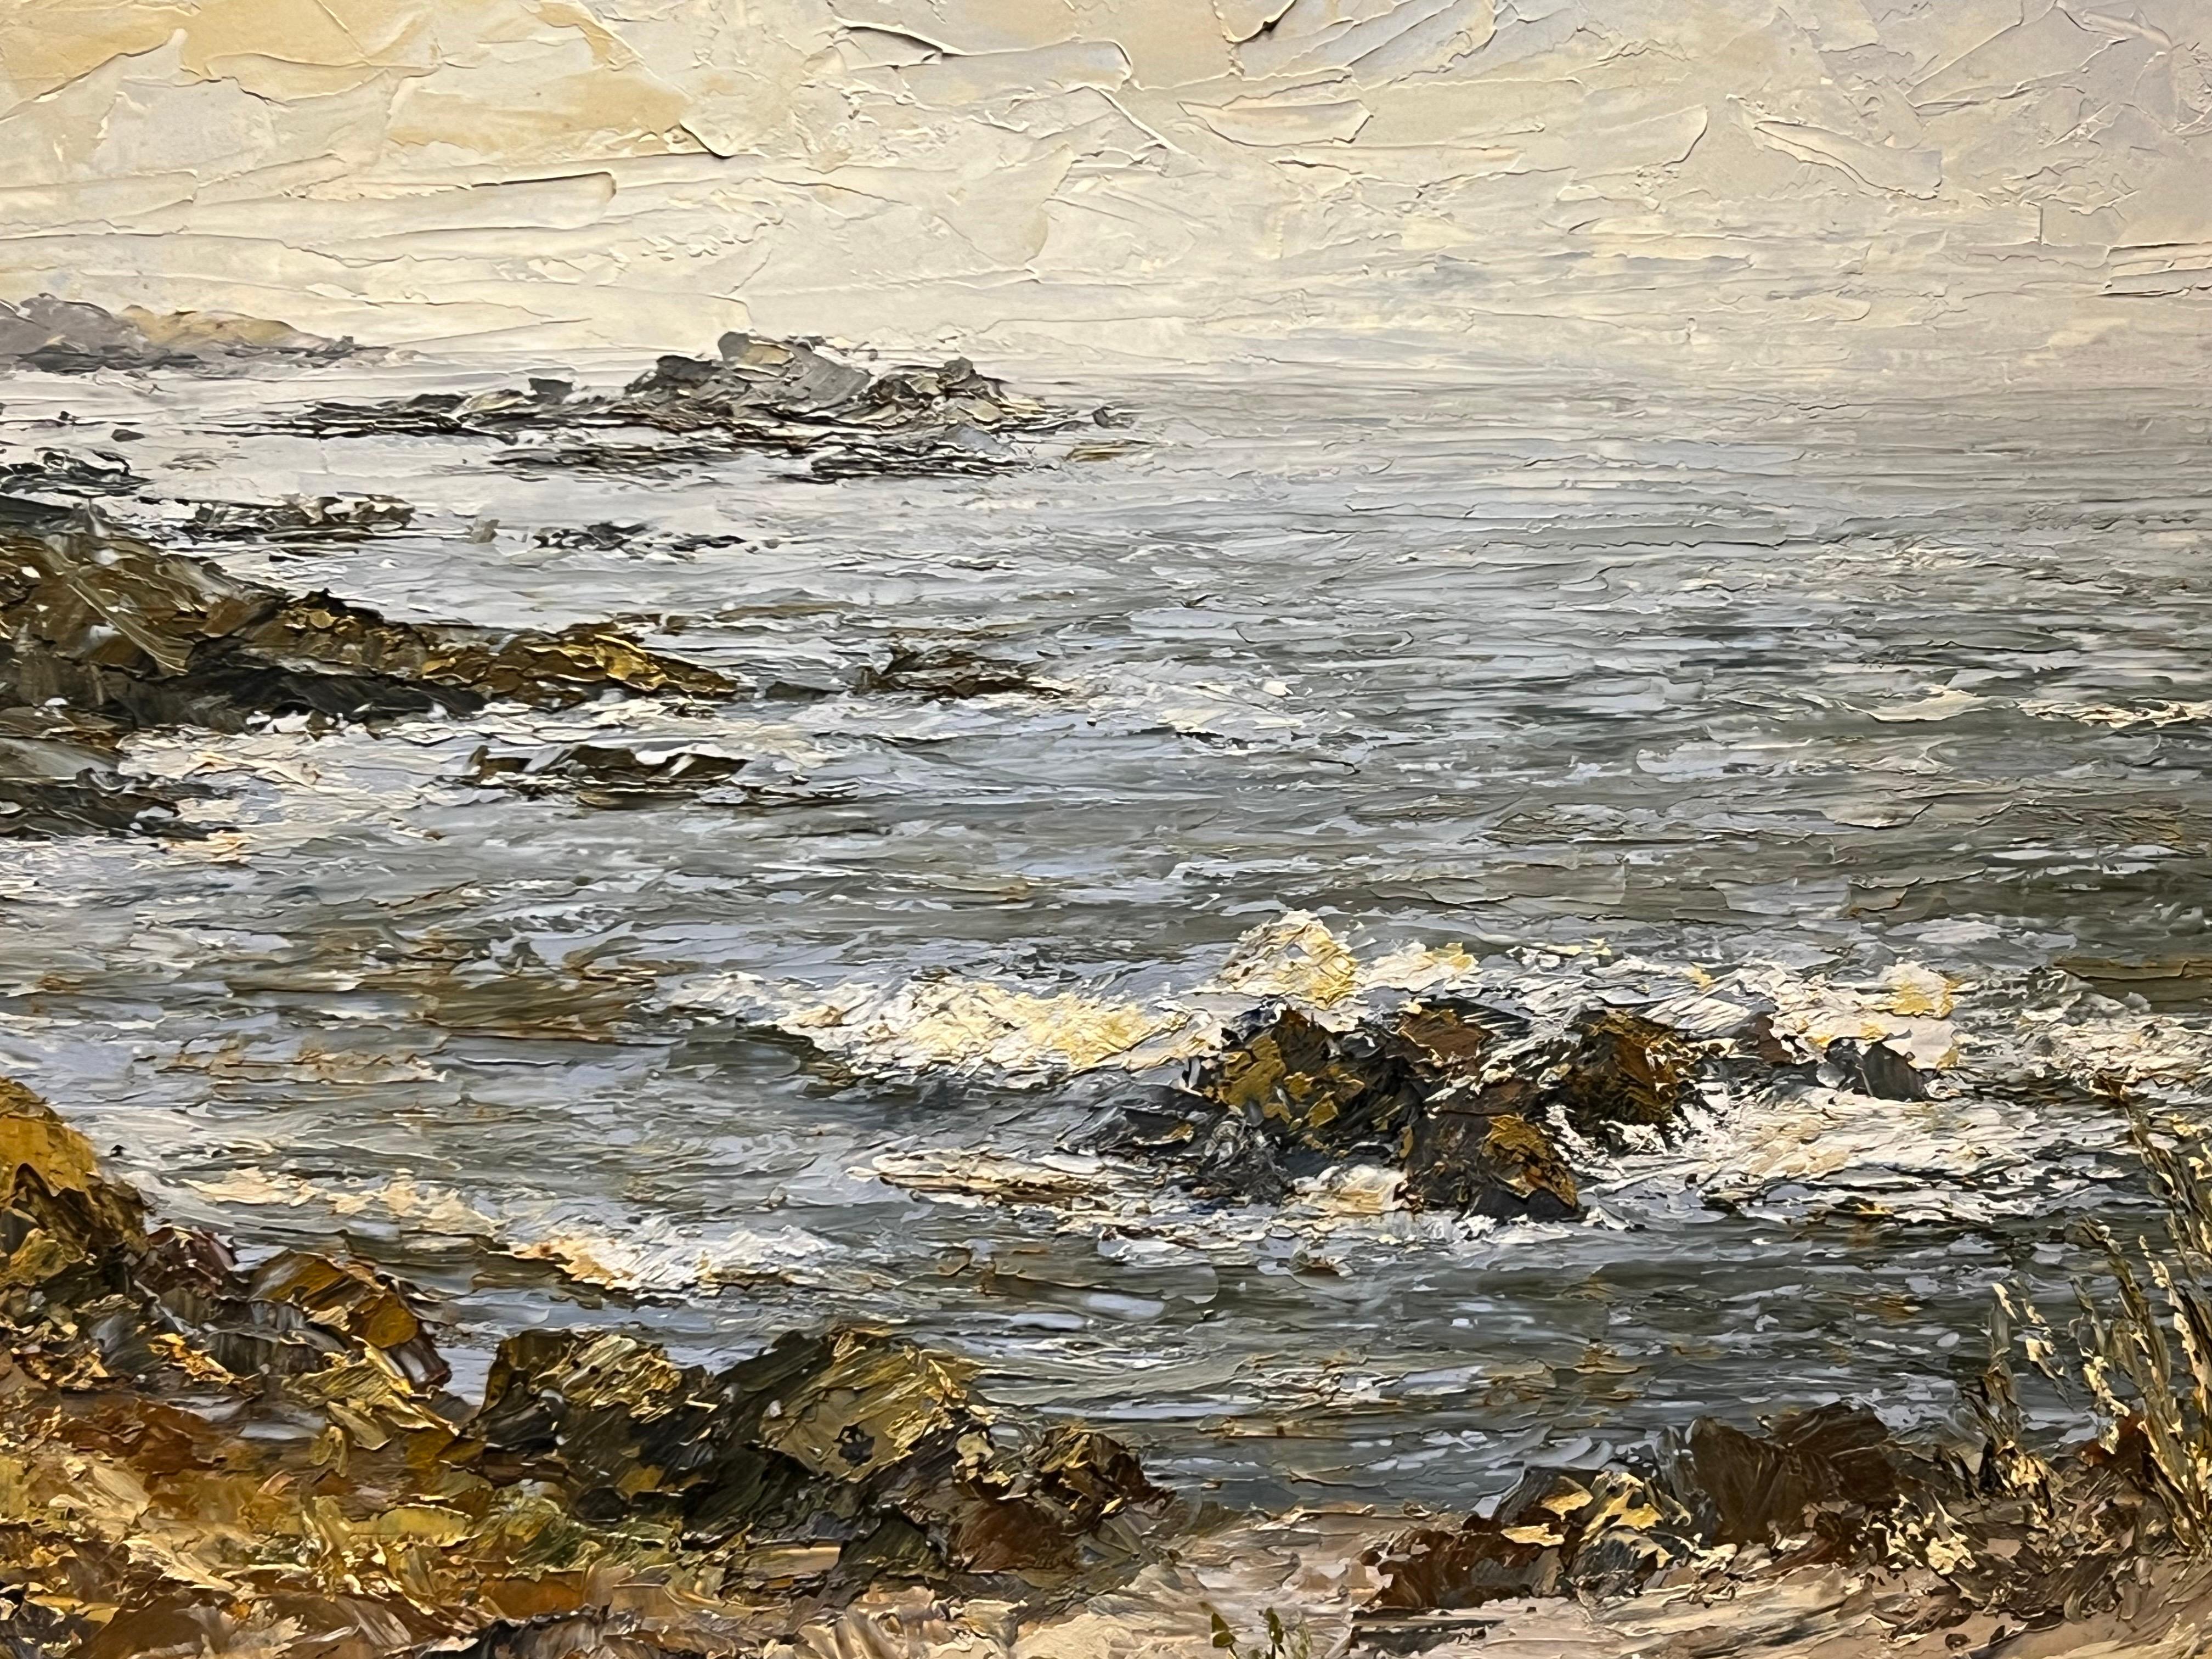 Kalifornische Küstenlandschaft, Meereslandschaft, Landschaft, Impasto-Gemälde des Künstlers des 20. Jahrhunderts (Impressionismus), Painting, von Constance Lee